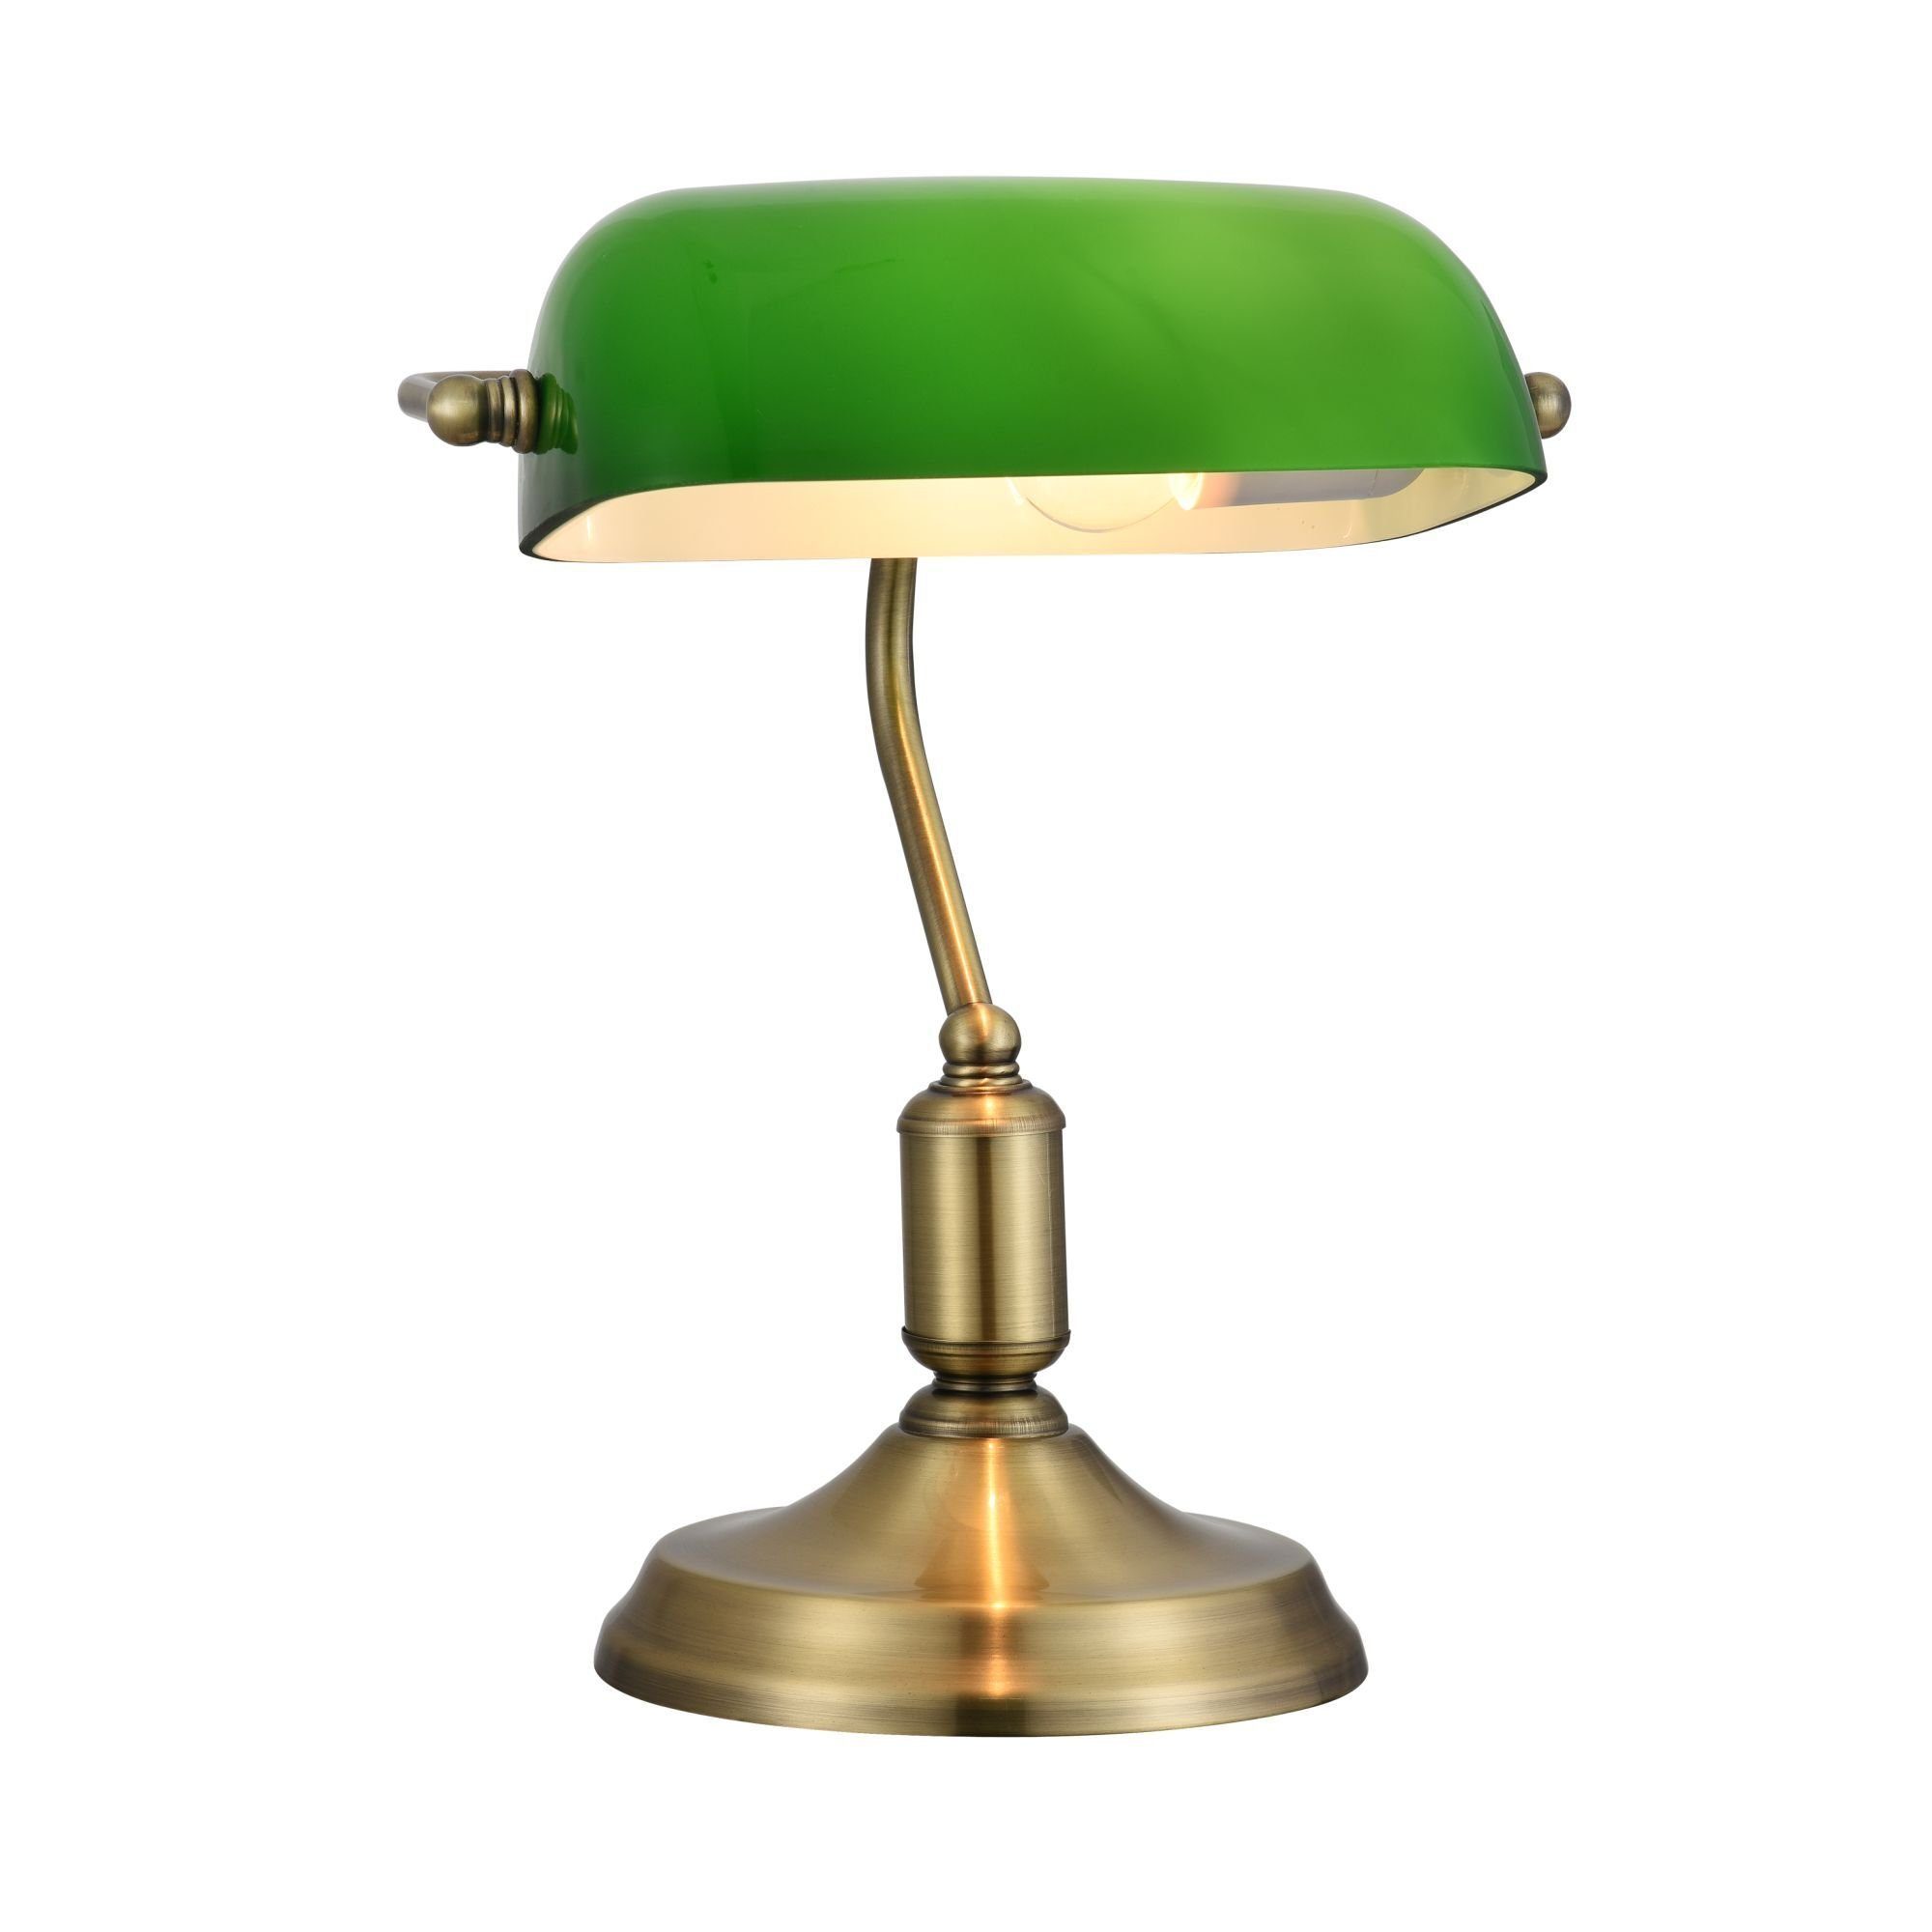 Maytoni Tischleuchte Tischleuchte Kiwi in Messing und Grün E27, keine  Angabe, Leuchtmittel enthalten: Nein, warmweiss, Tischleuchte,  Nachttischlampe, Tischlampe, Die Lampe ist 26x36x18cm groß und grün,  goldfarben gehalten